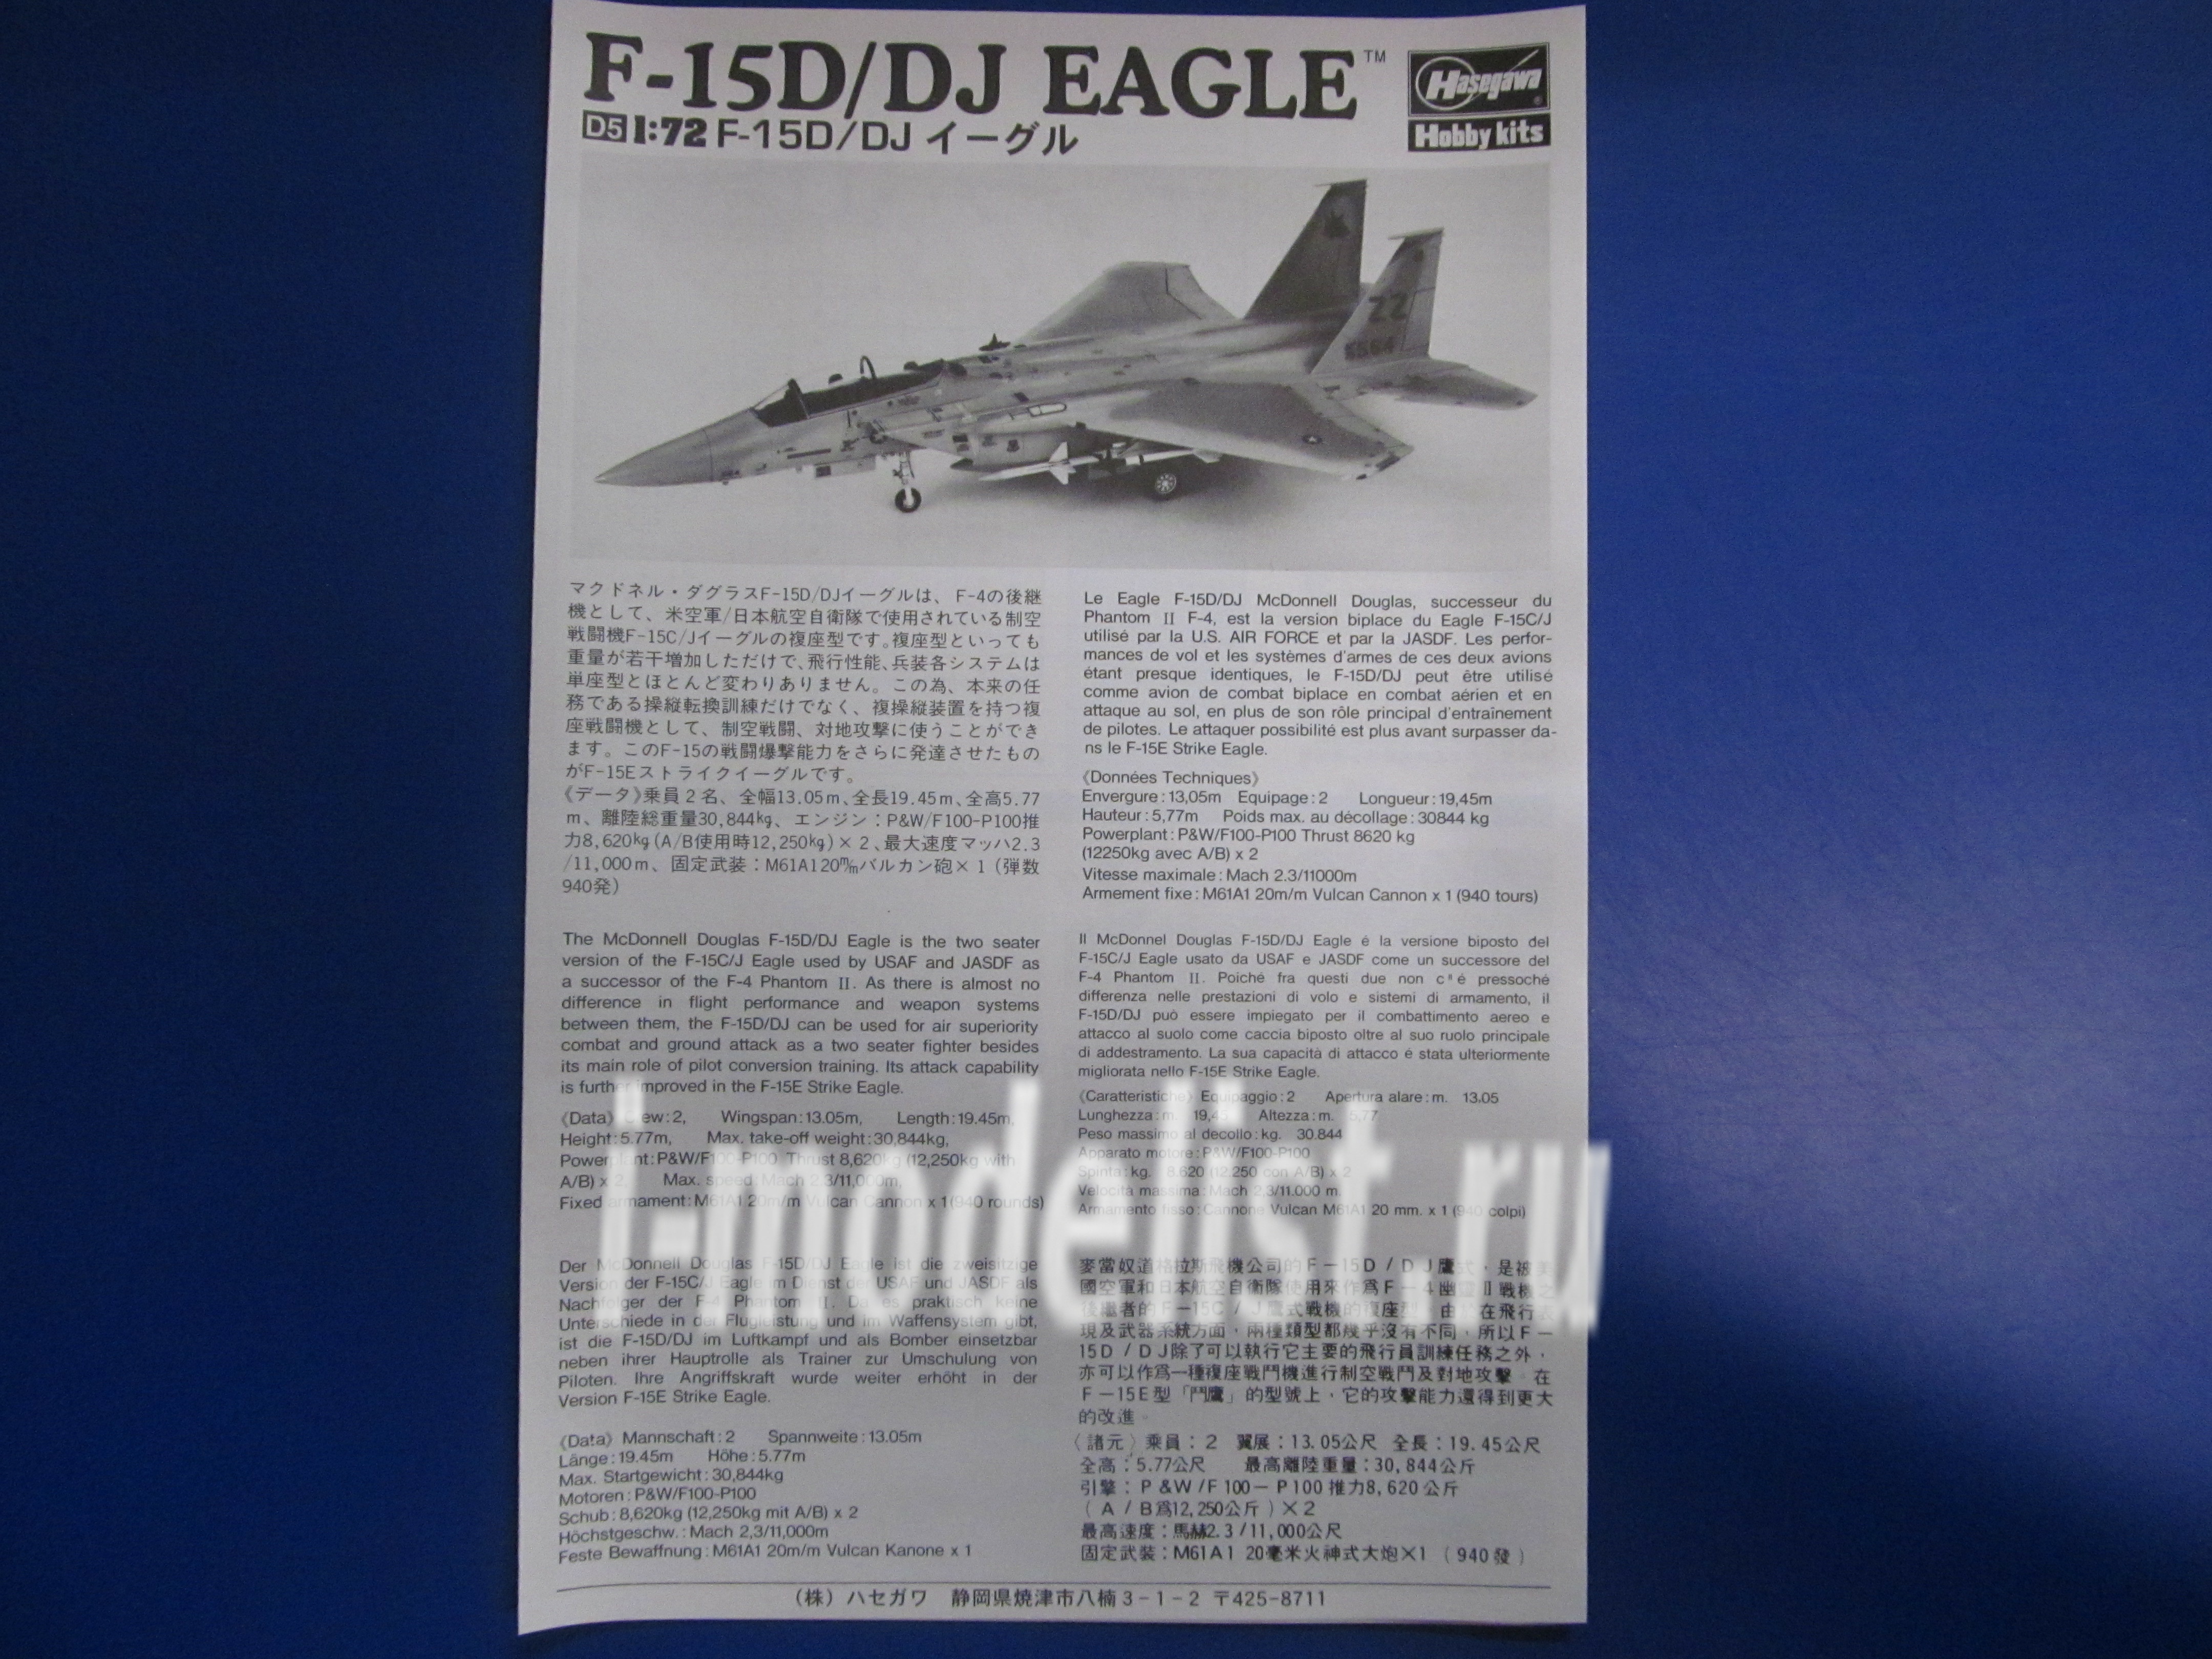 00435 Hasegawa 1/72 E-15D/DJ Eagle